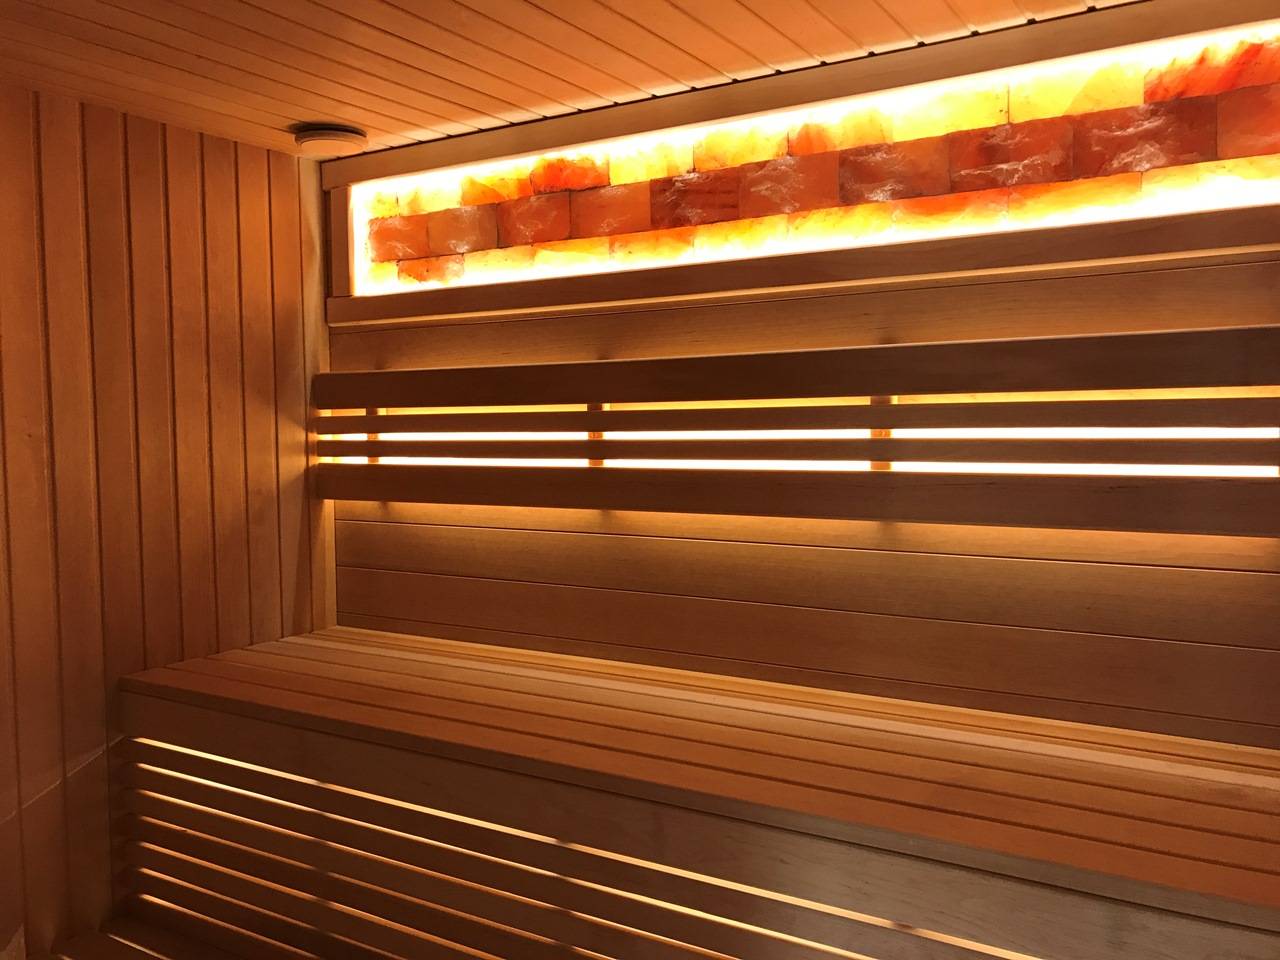 Светодиодная лента для сауны: как организовать освещение светодиодами для бани, сауны, парной